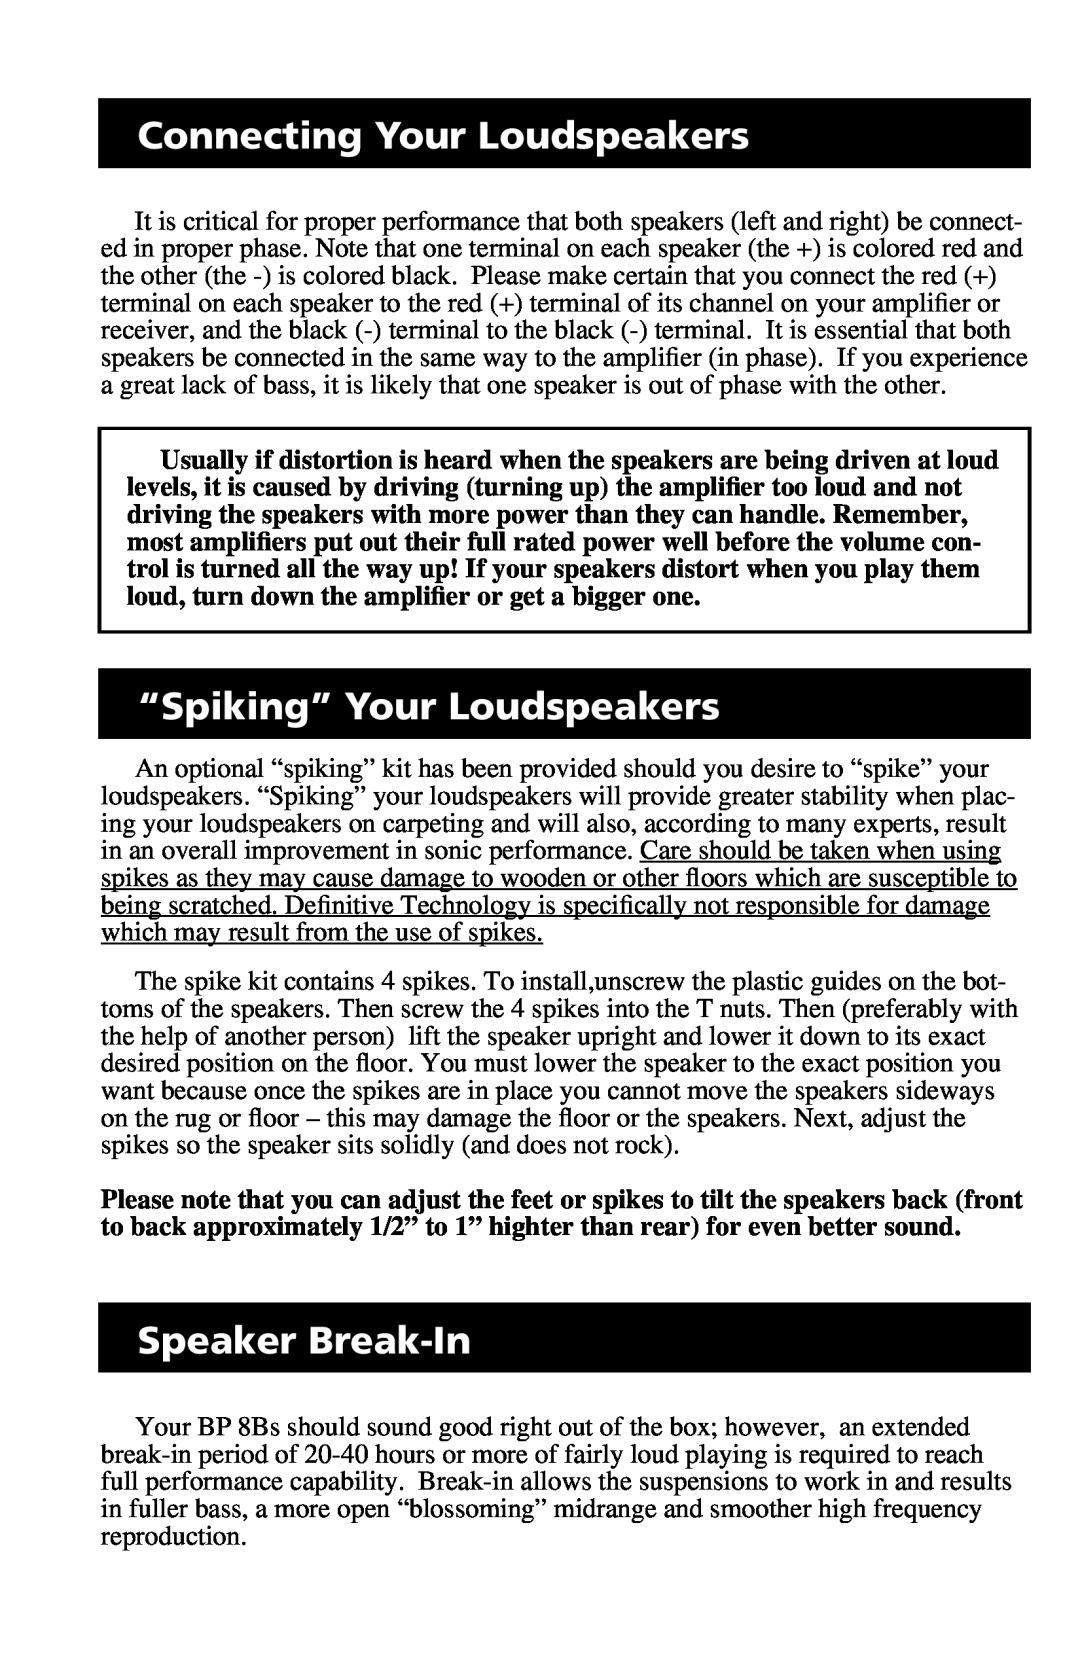 Definitive Technology BP 8B owner manual Connecting Your Loudspeakers, “Spiking” Your Loudspeakers, Speaker Break-In 